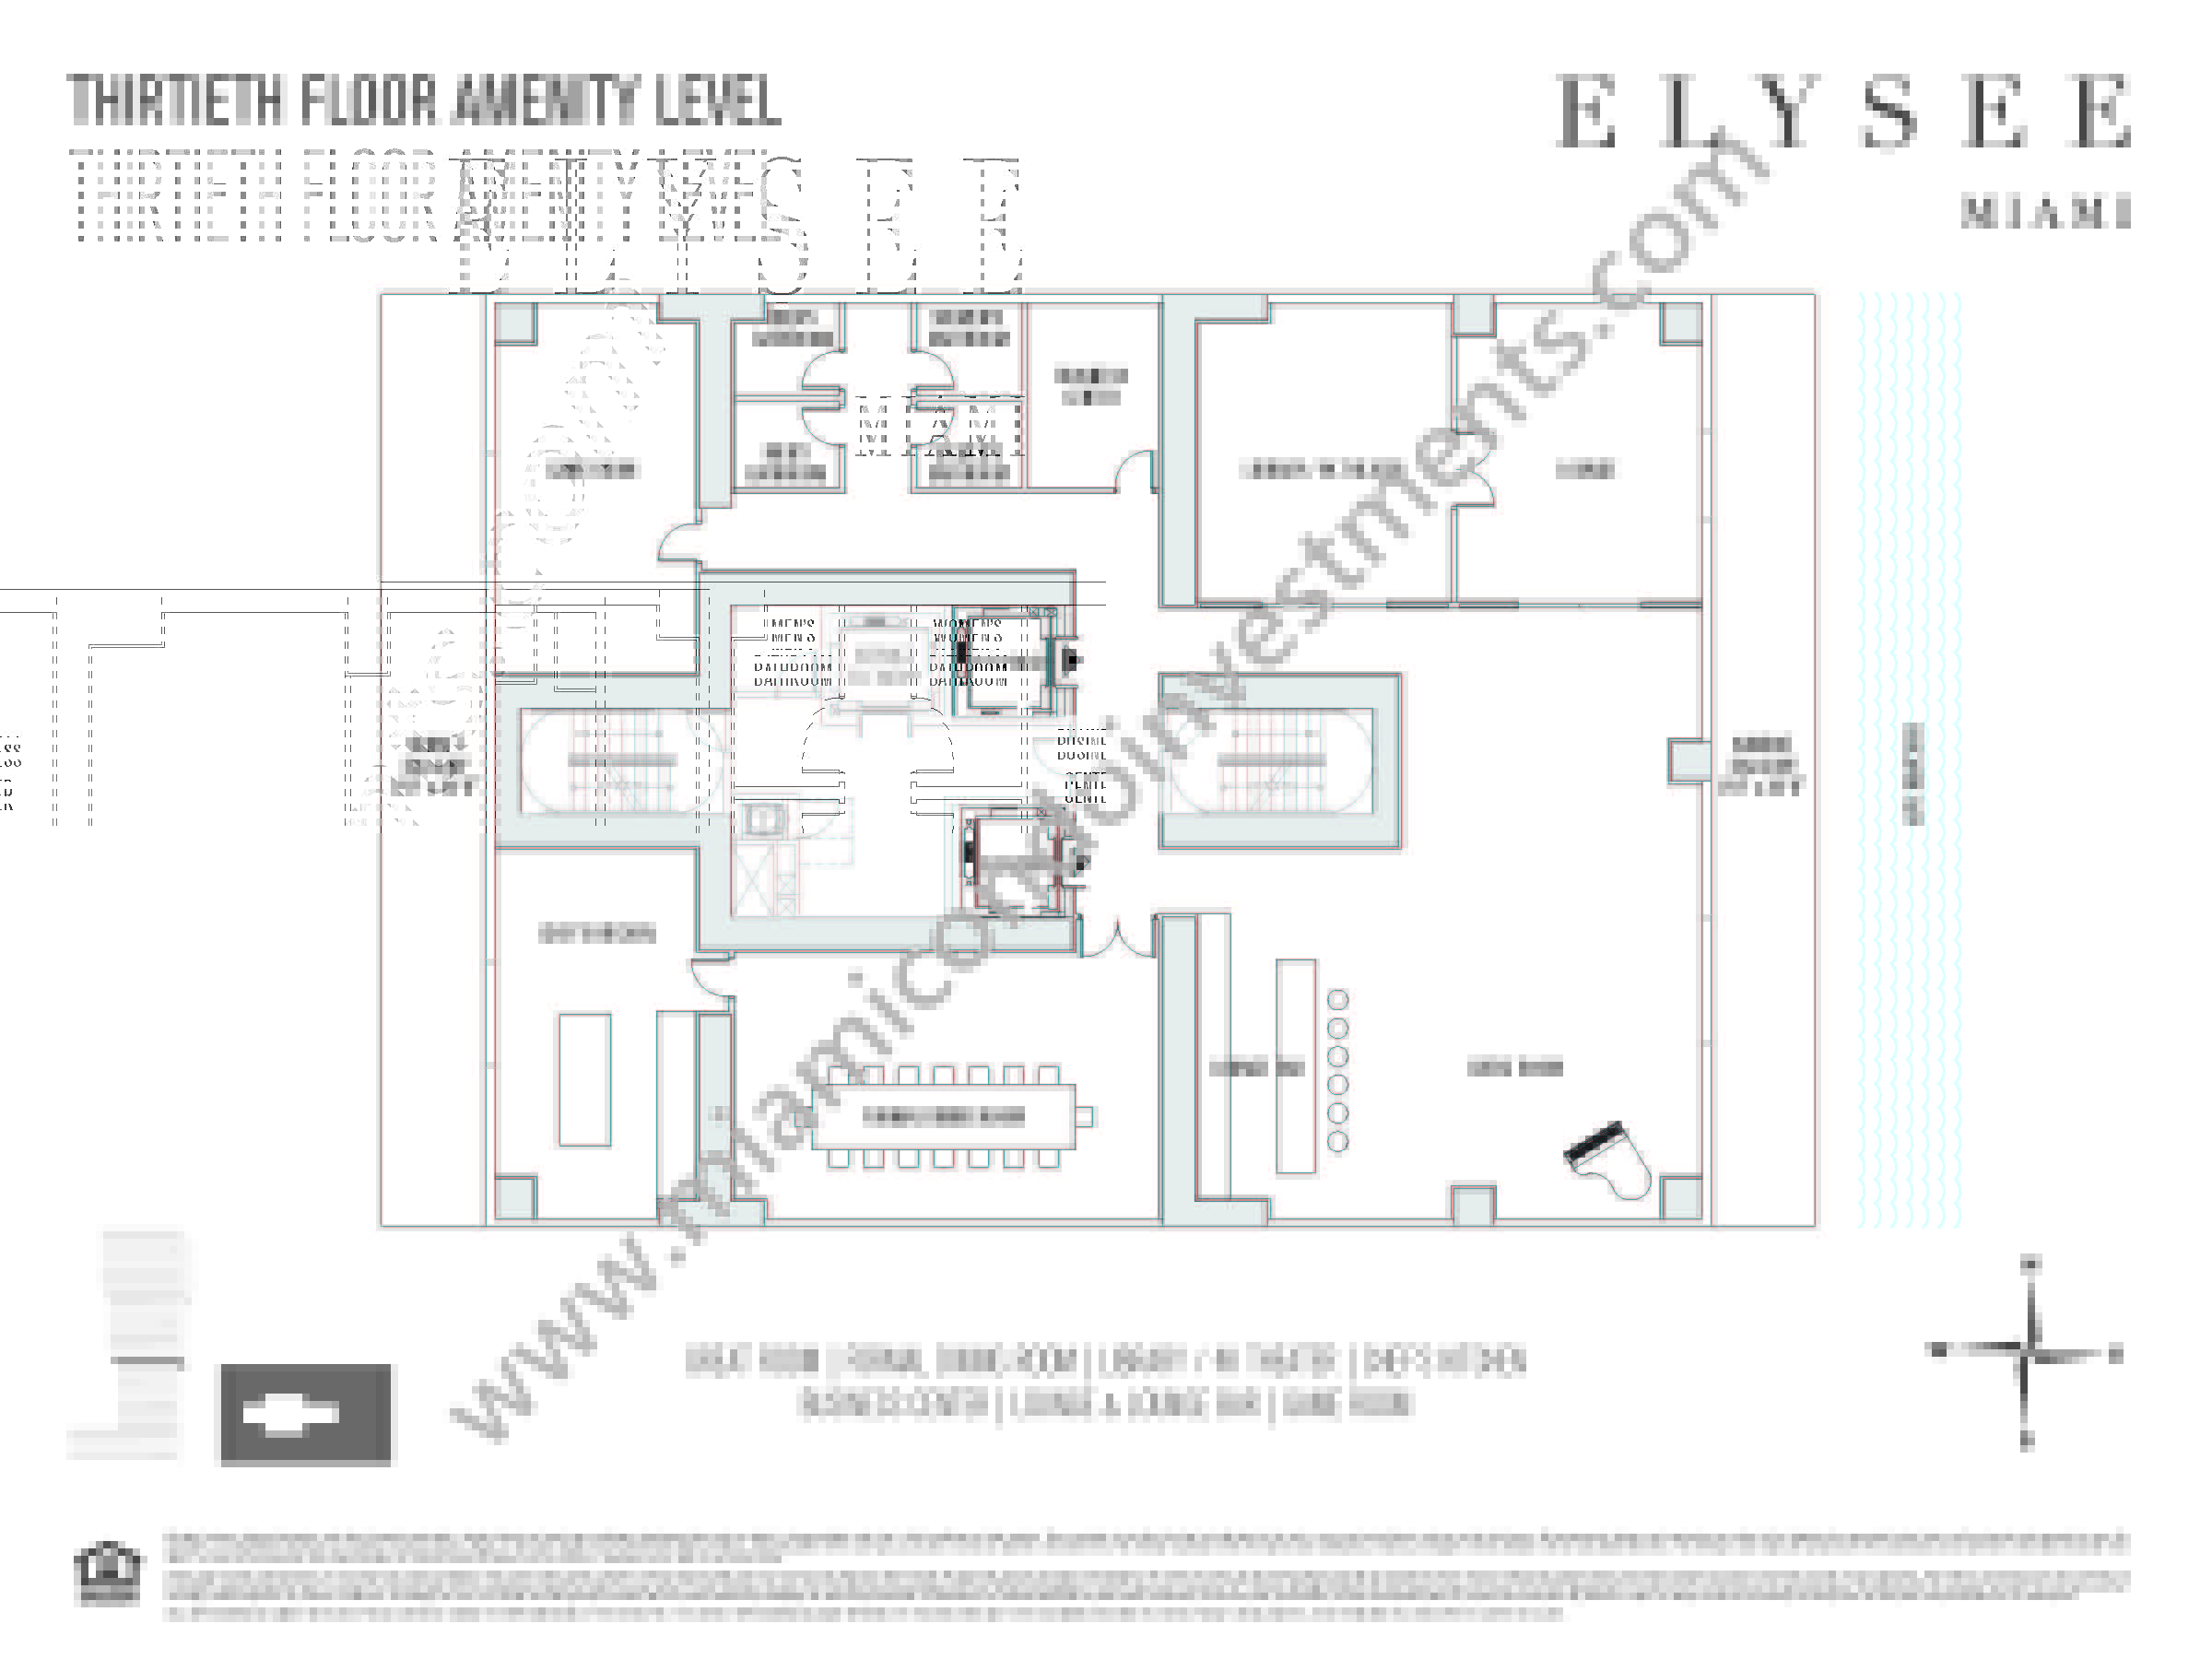 Elysee 30th floor amenities